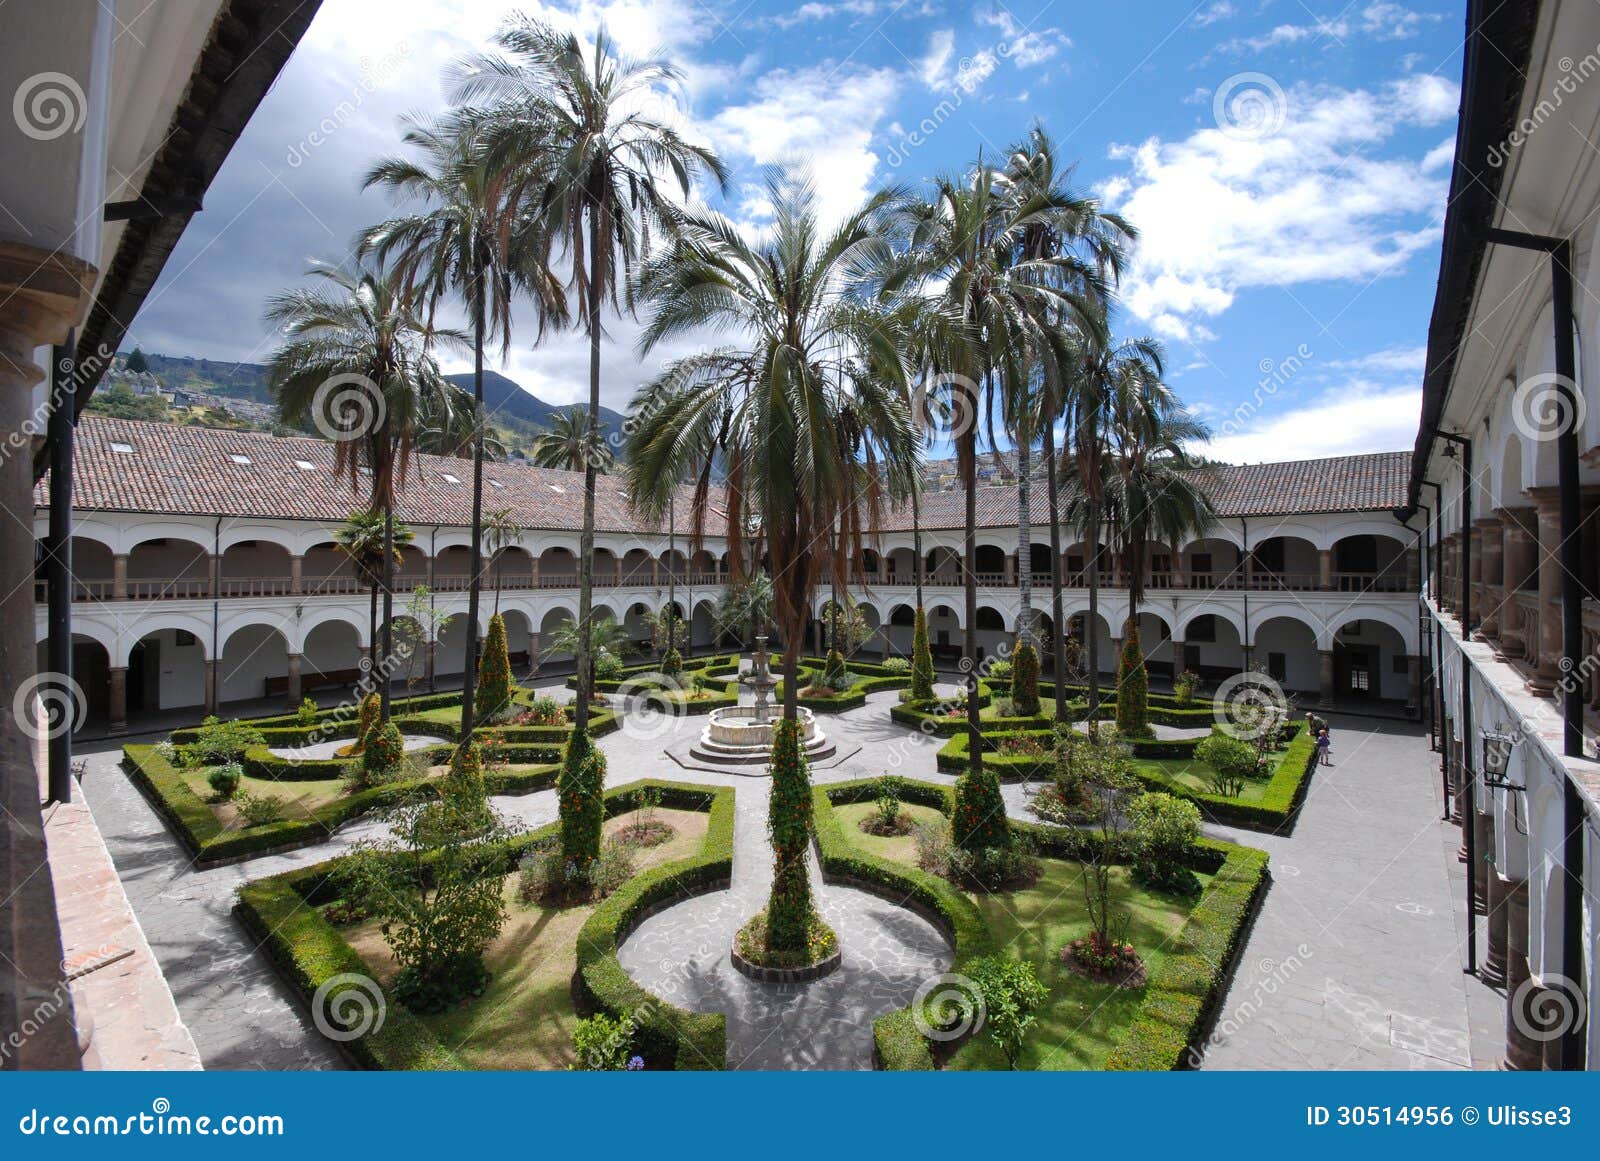 the inner courtyard of san francisco monastery, quito, ecuador